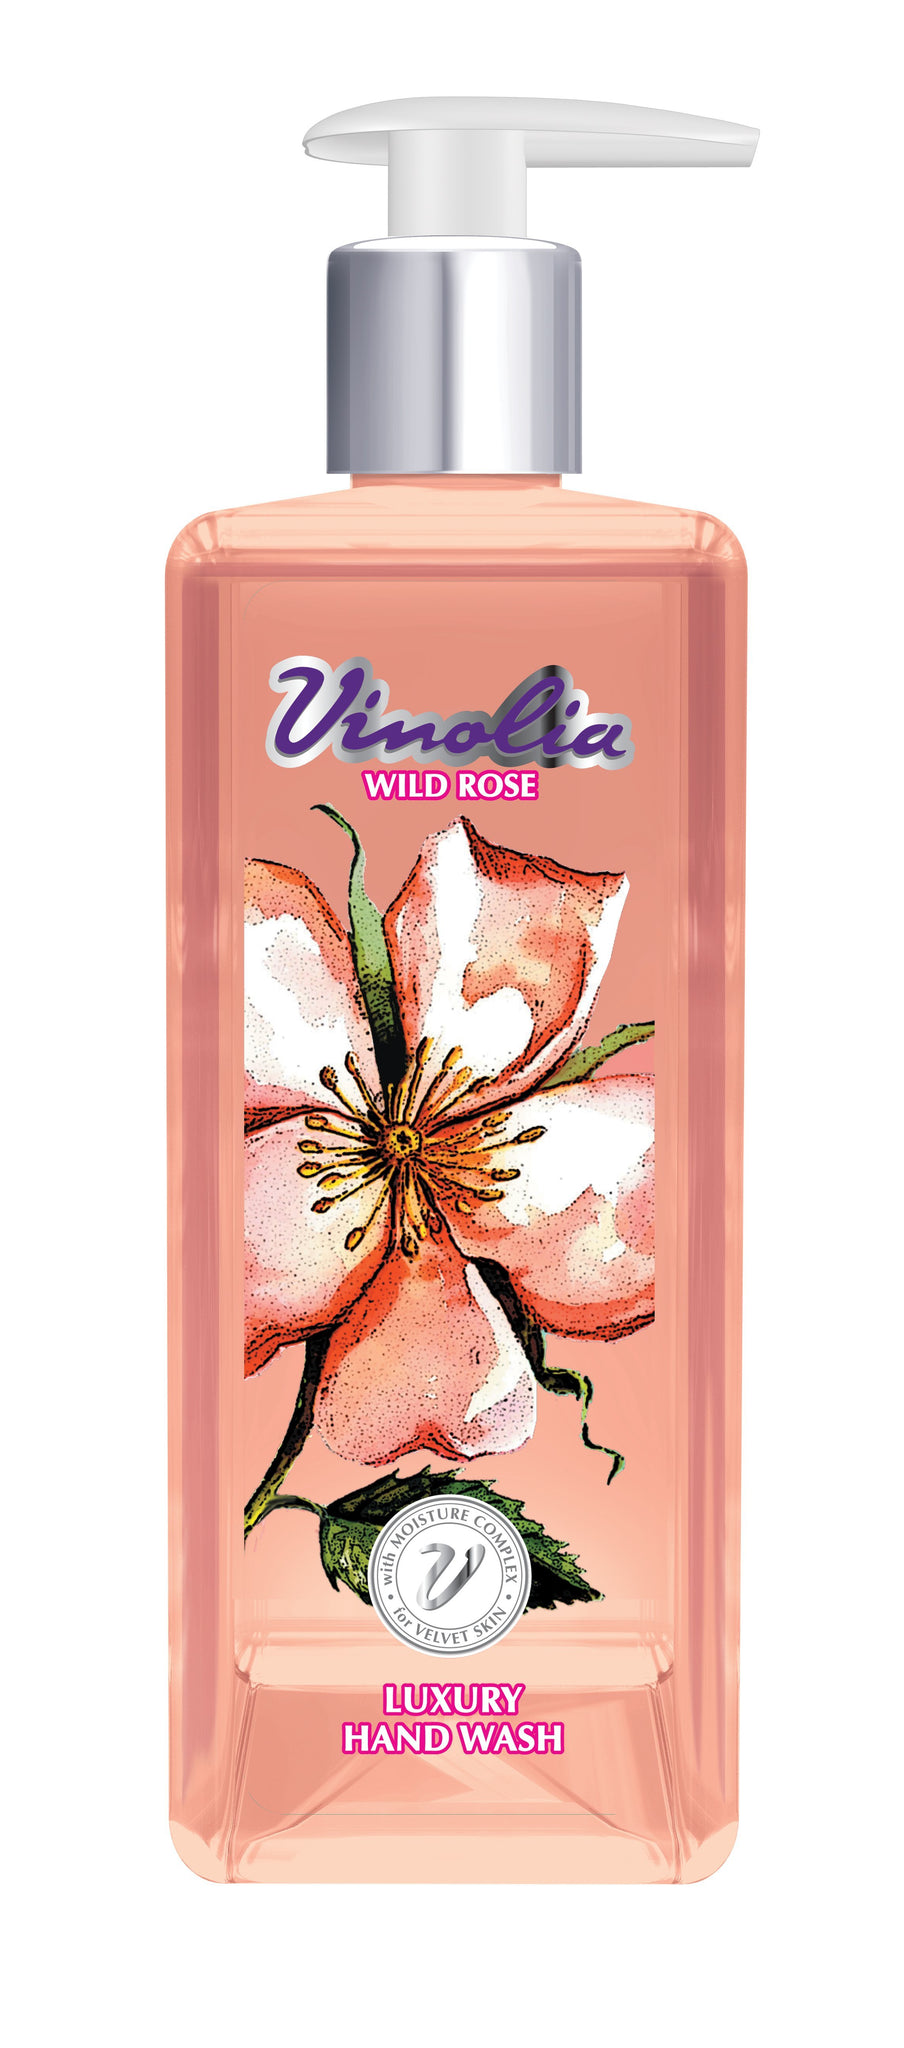 Vinolia Hand Wash - Wild Rose - 290ml 24-Pack